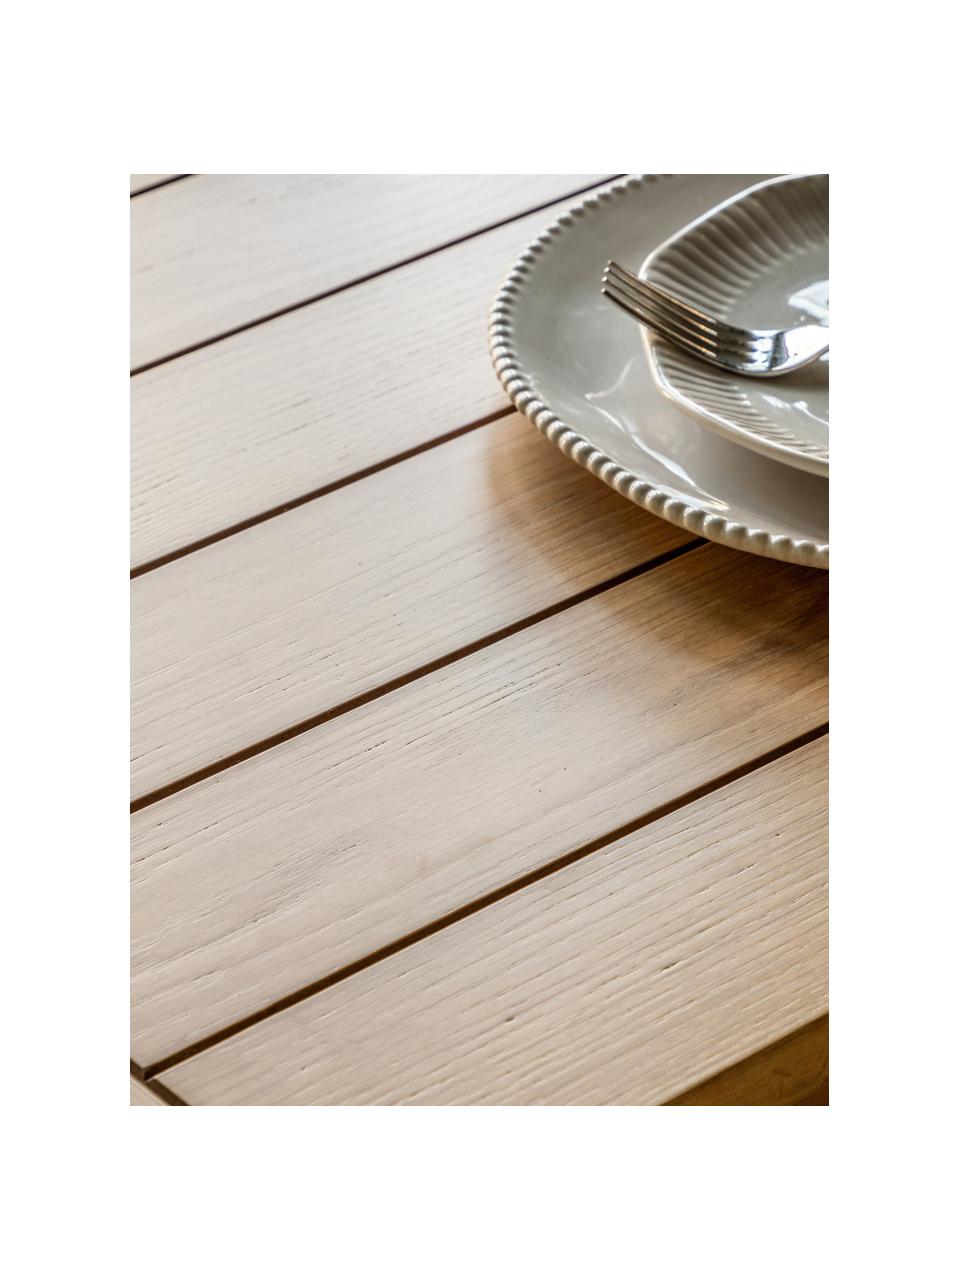 Uitschuifbare houten eettafel Eton, handgemaakt, 180 - 230 x 95 cm, Tafelblad: MDF, Frame: gelakt eikenhout, Eikenhout, B 180 - 230 x D 95 cm